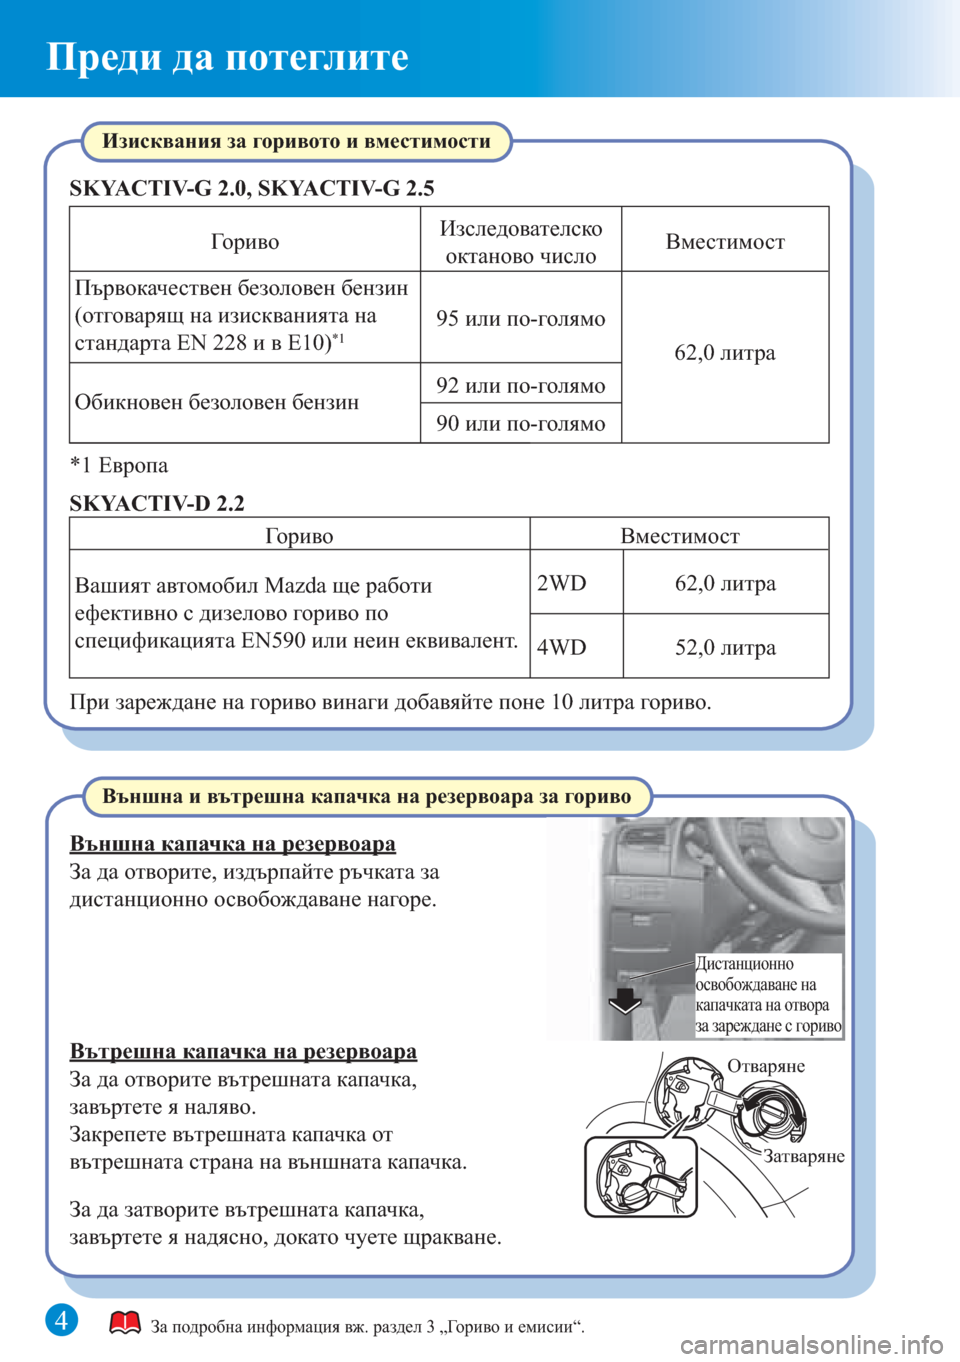 MAZDA MODEL 6 2015  Бързо ръководство (in Bulgarian) 4
Преди да потеглите
Отваряне
Затваряне
Дистанционно 
освобождаване на 
капачката на отвора 
за зареждане с г�